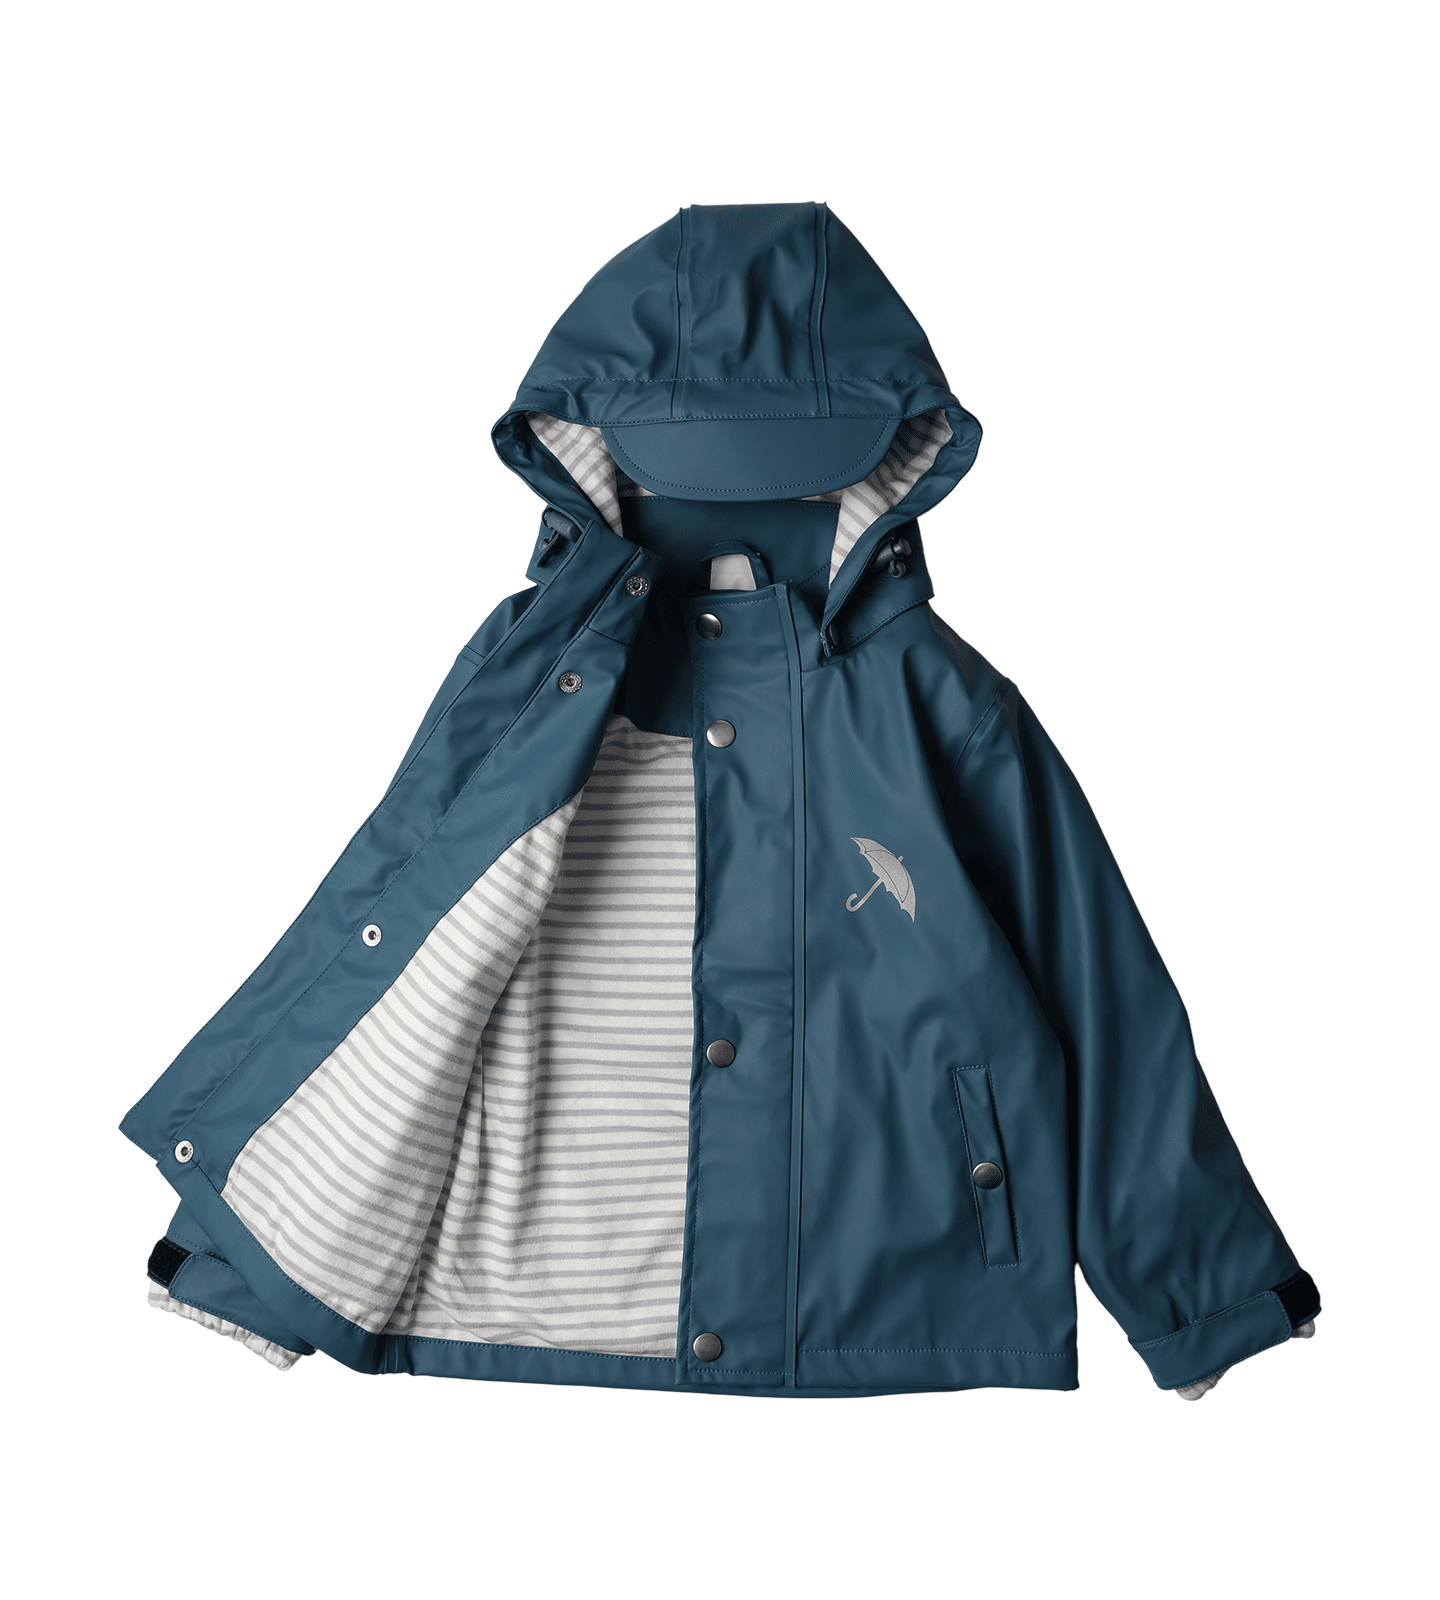 Waterproof Raincoat - Brolly Sheets AU